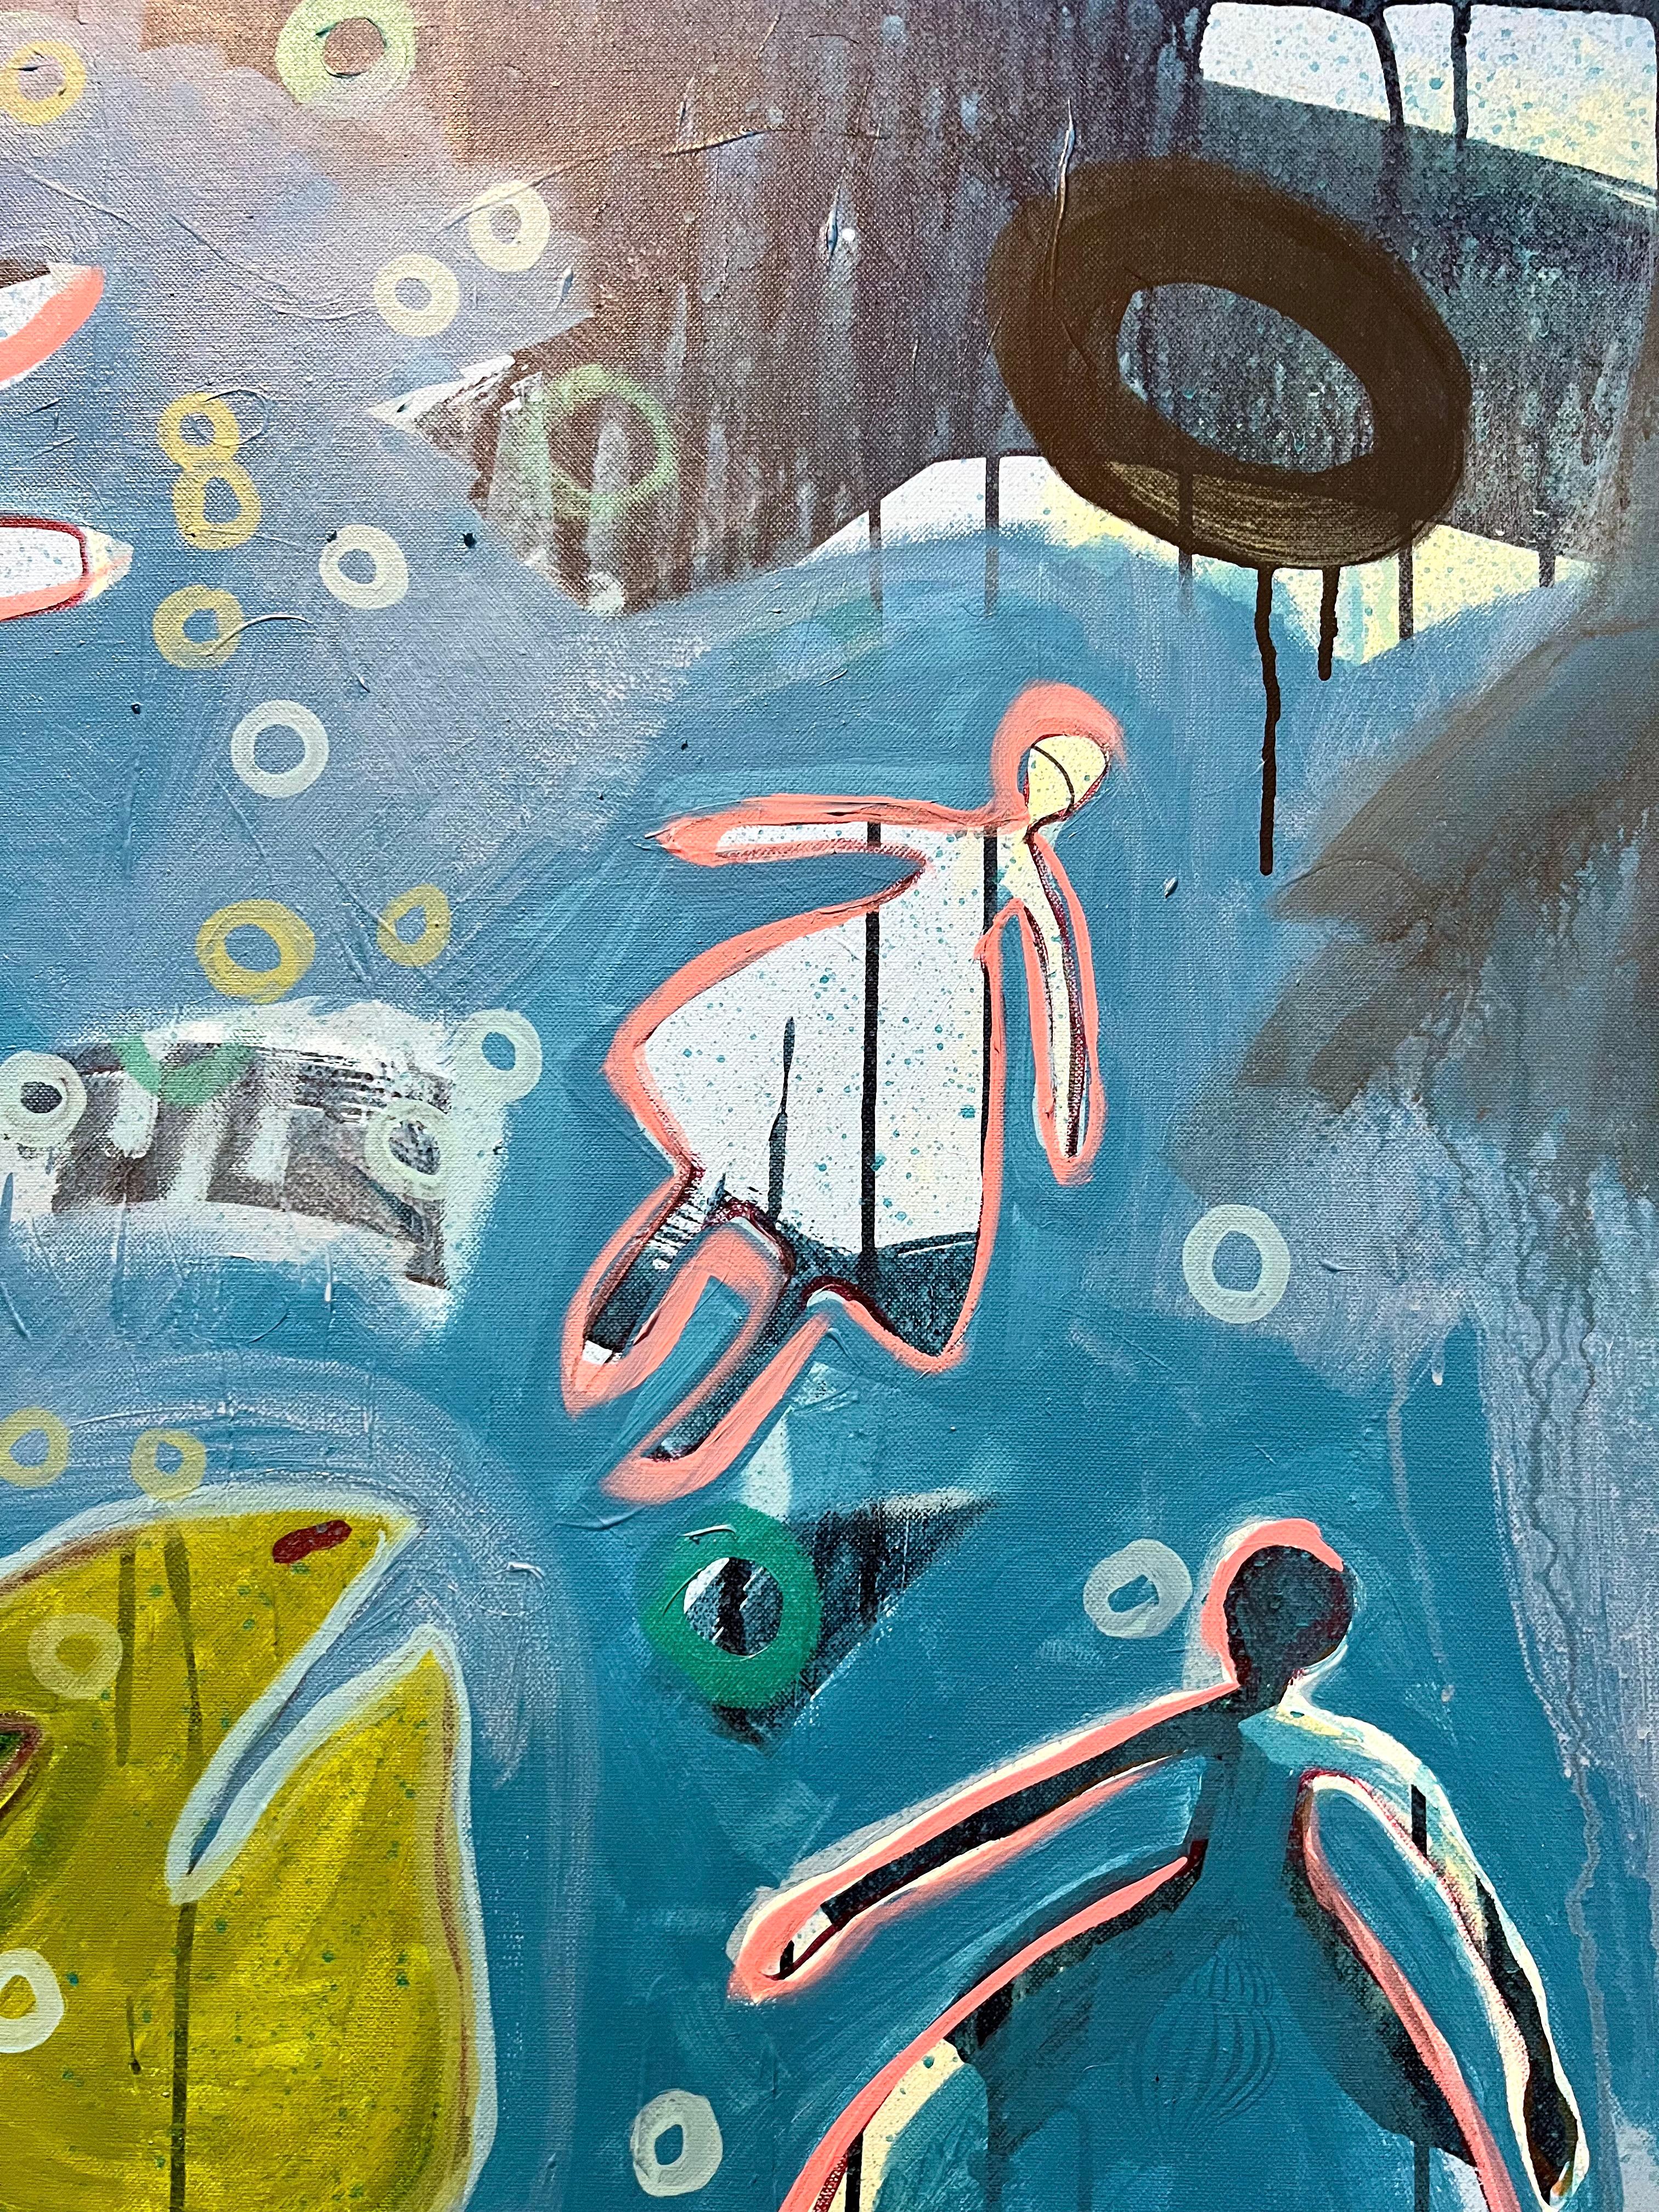 The Dream, von Melanie Yazzie, Navajo, Gemälde, vertikal, Schildkröte, Blau, Grün 2